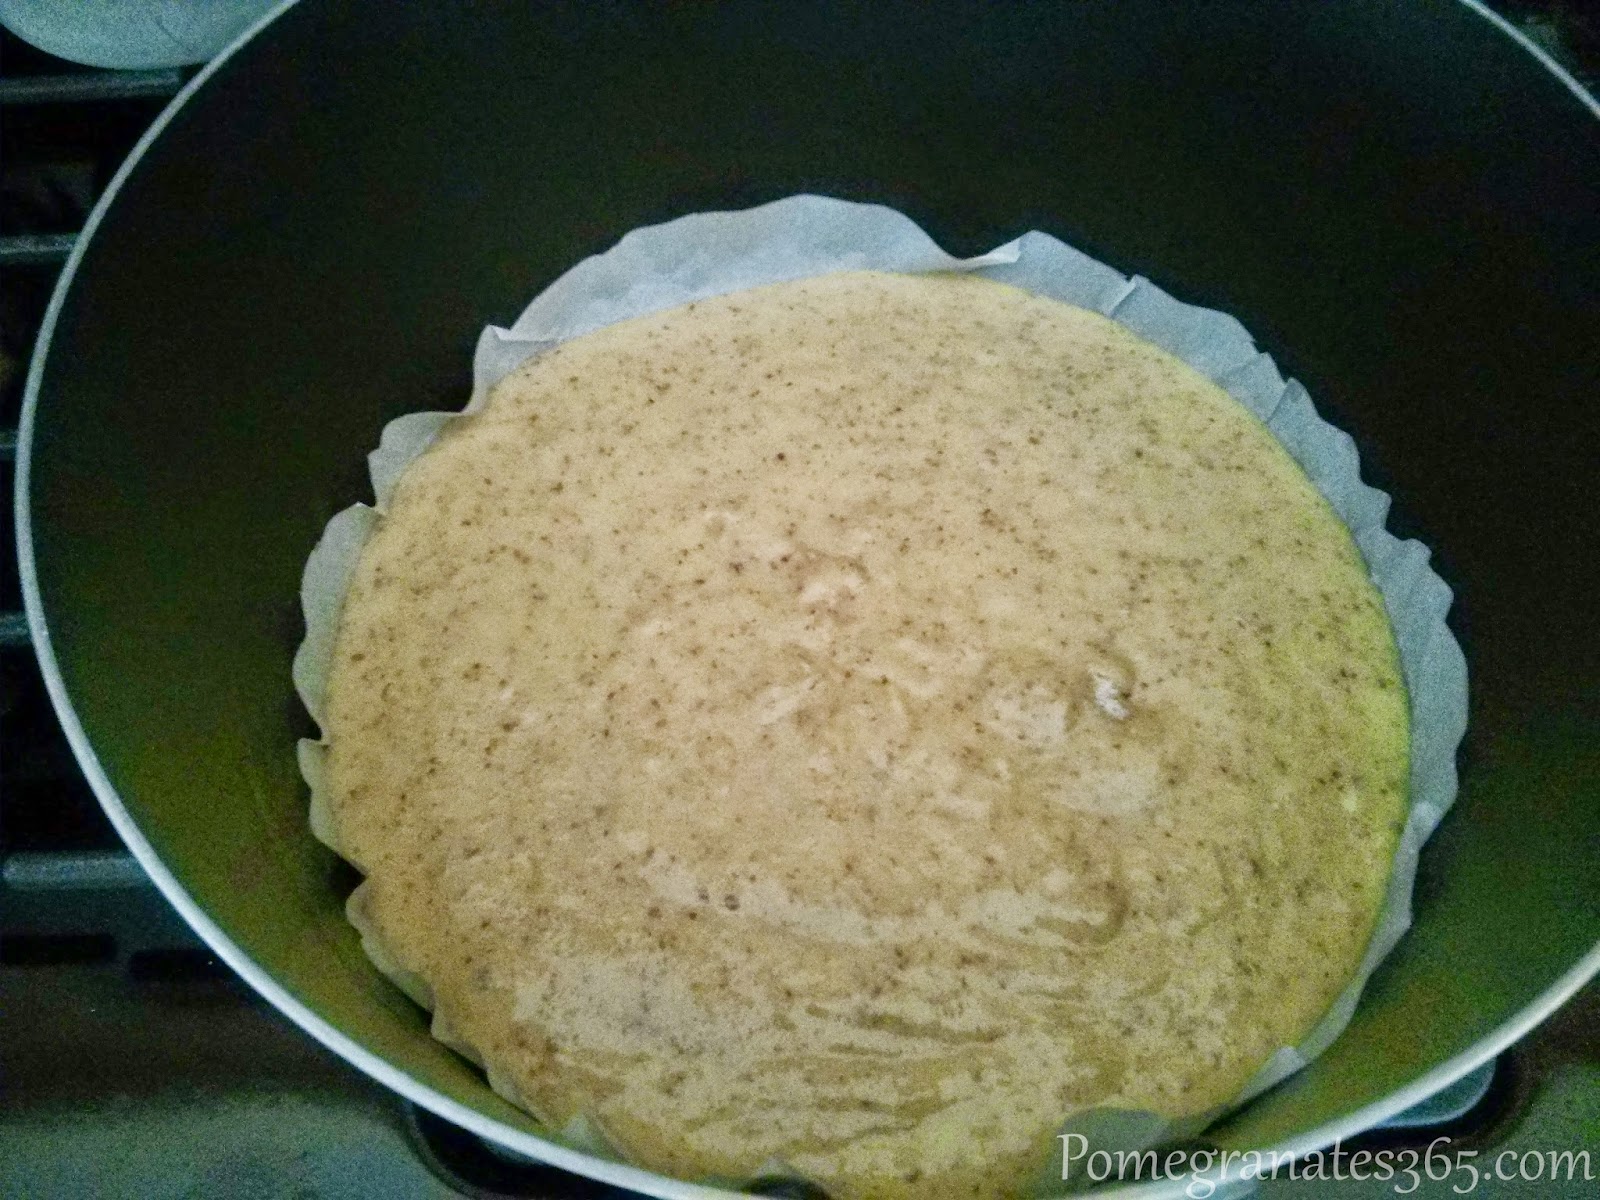 Almond flour batter